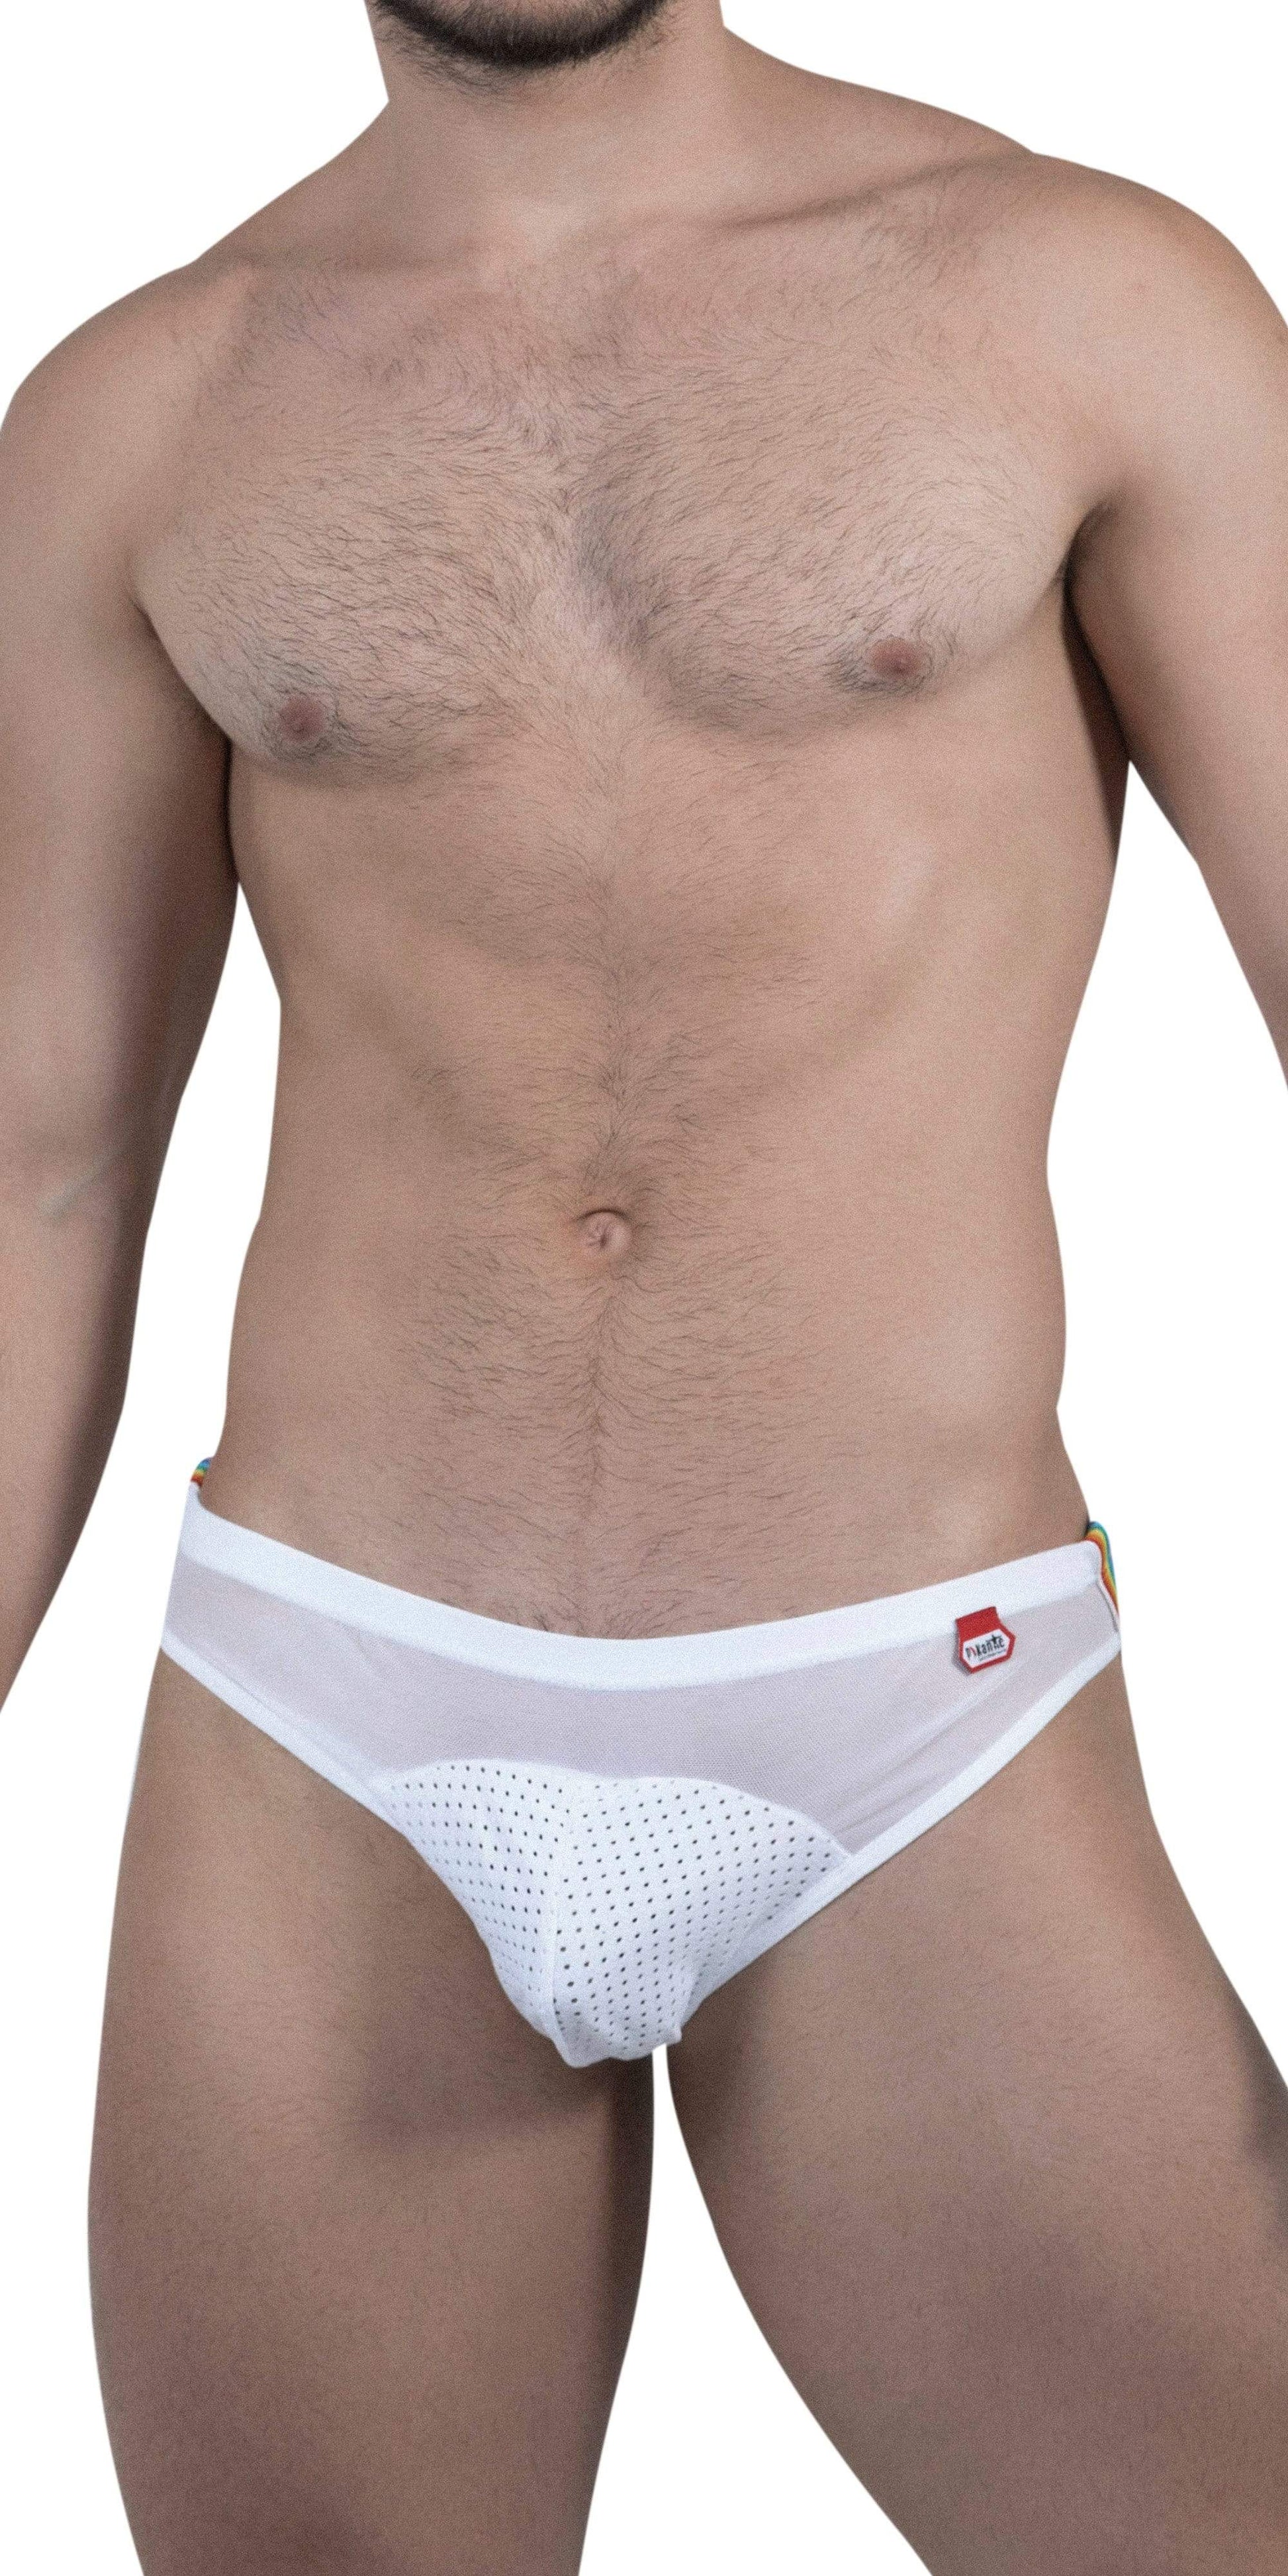 Pikante Underwear Unique Jockstrap In White  Pikante Underwear –   - Men's Underwear and Swimwear